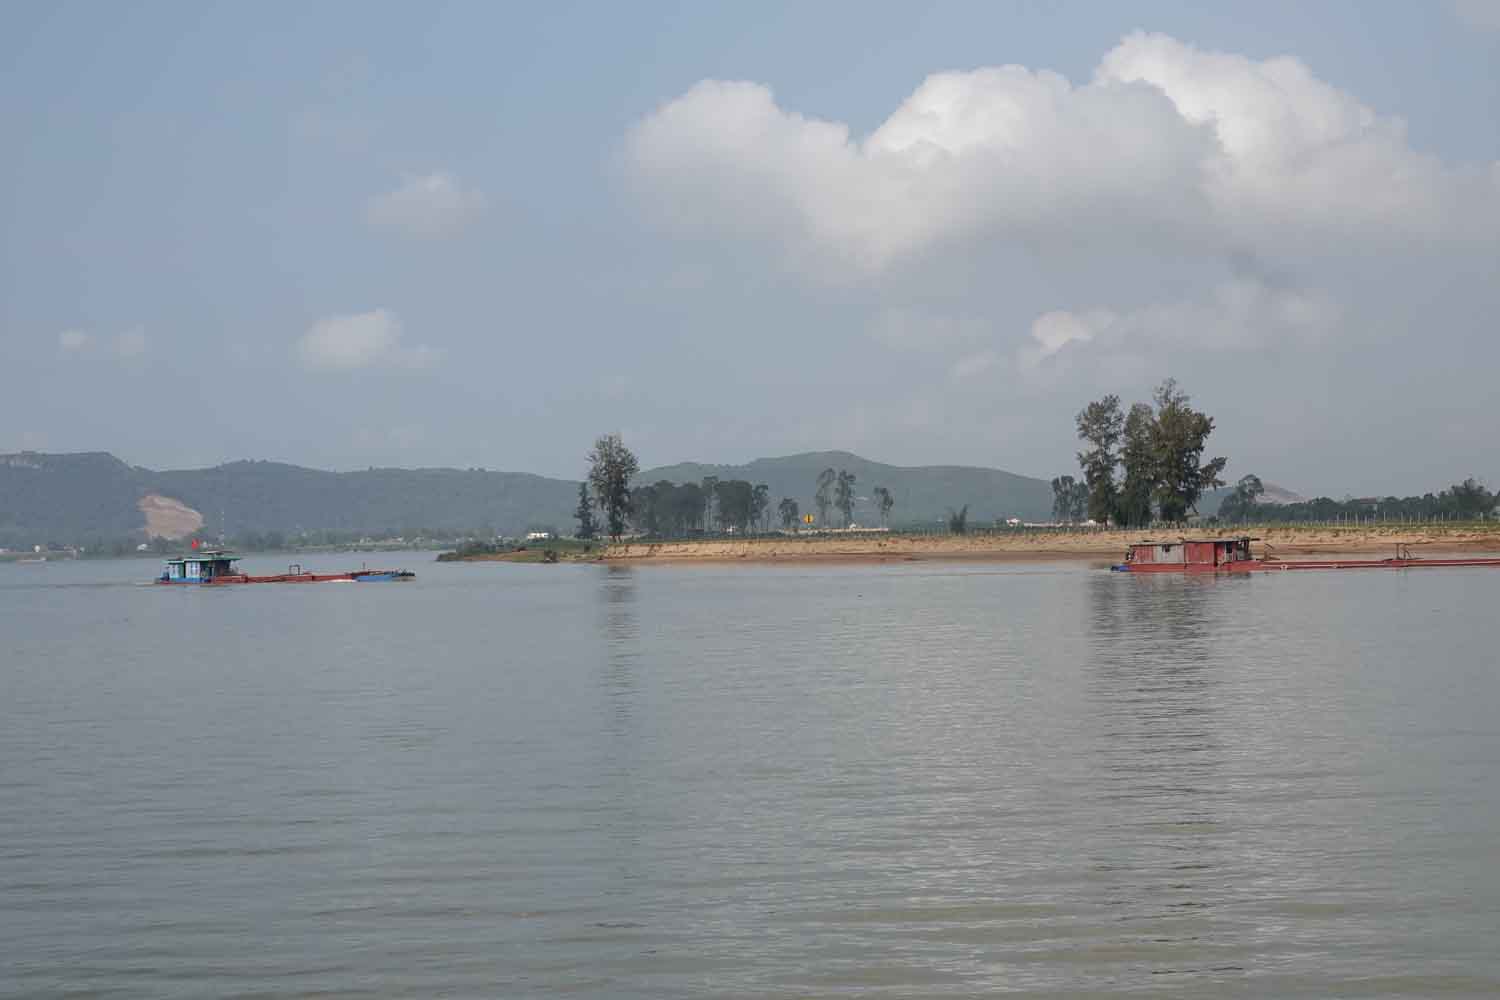 Tàu chở cát qua lại trên sông để đưa về bãi tập kết bên bờ sông Lam đoạn sạt lở nặng nề ở xã Xuân Lam. Ảnh: Trần Tuấn.